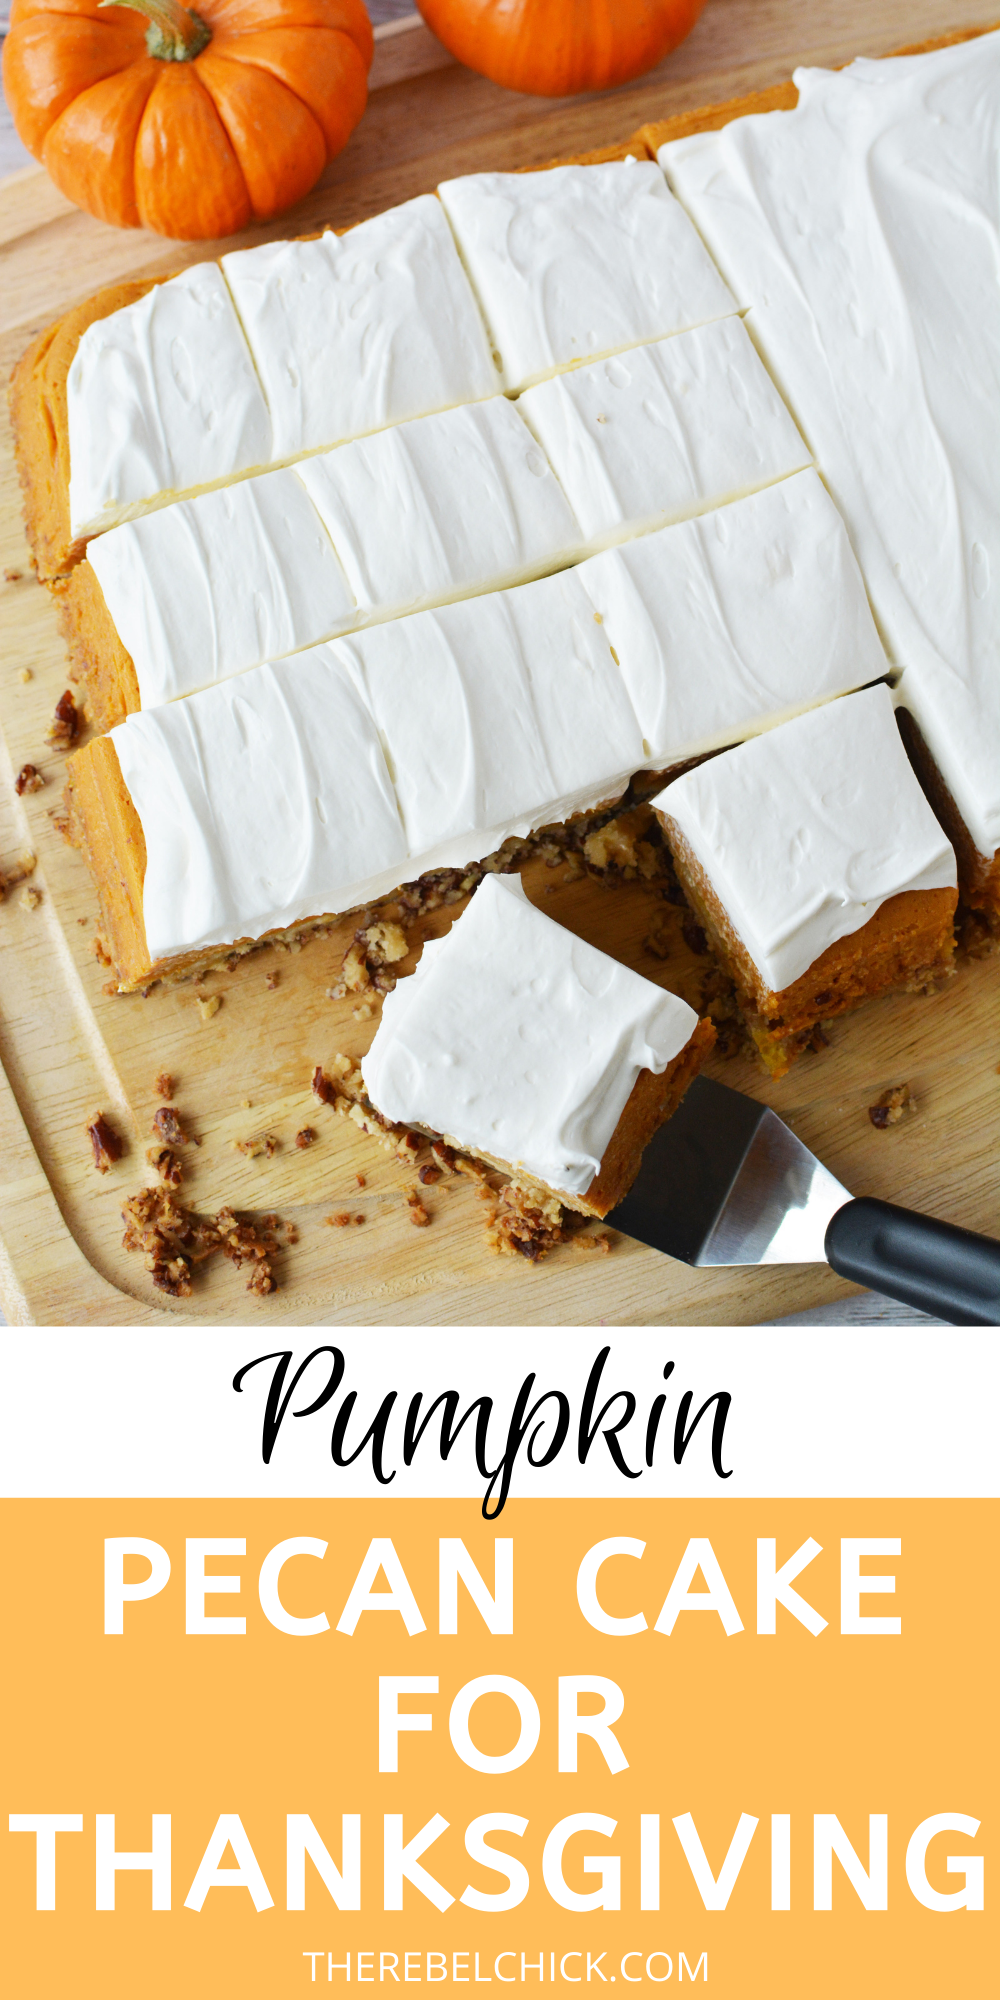 Pumpkin Pecan Cake Recipe for Thanksgiving